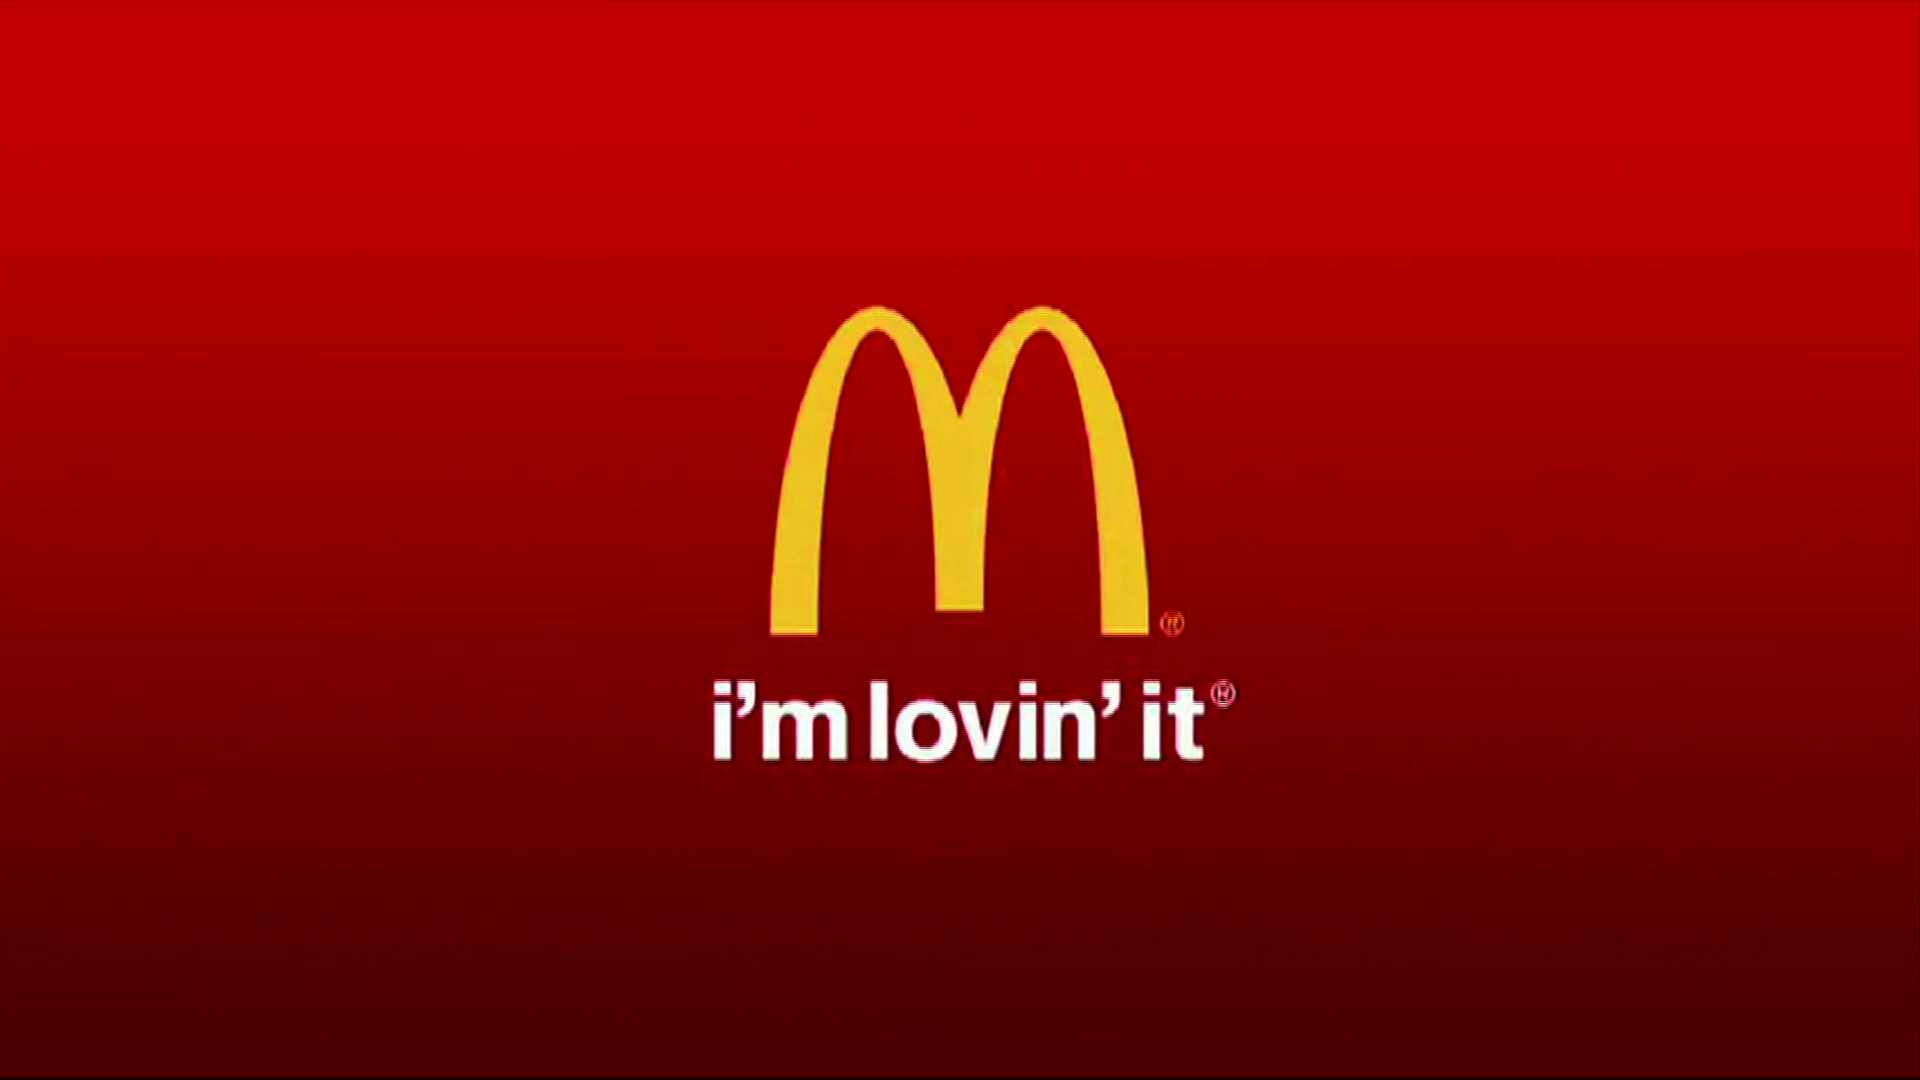 McDonalds iPhone wallpaper  Fast food logos Food wallpaper Food